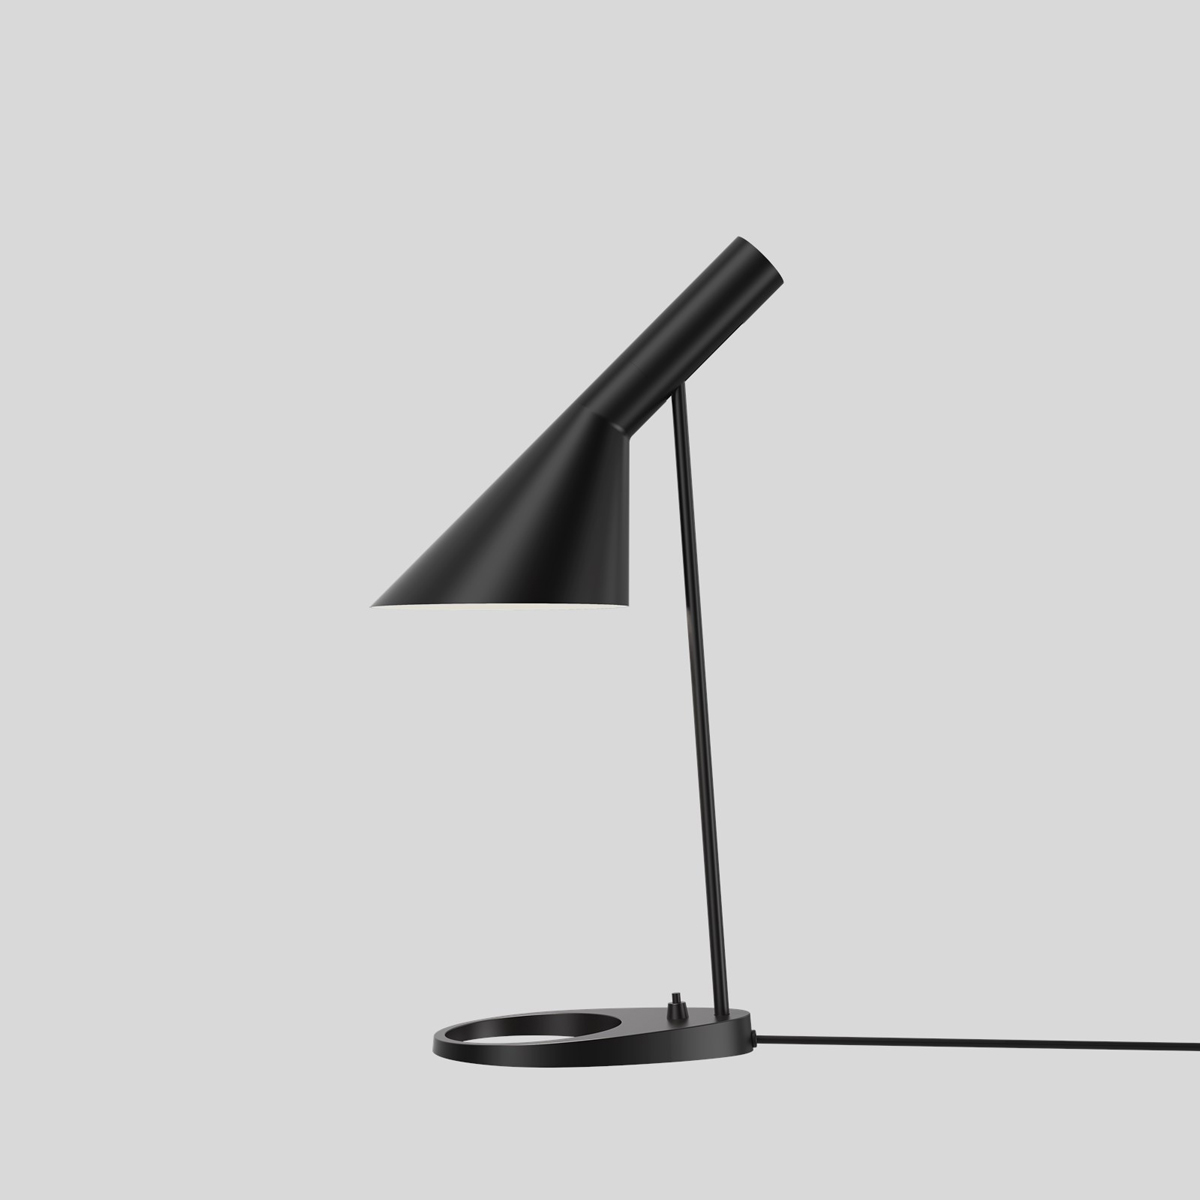 De AJ lamp van het merk Louis Poulsen is in 1957 ontworpen door Arne Jacobsen. Hij ontwierp deze zwarte tafellamp voor het SAS Royal Hotel in Kopenhagen (Radisson-collectie). 